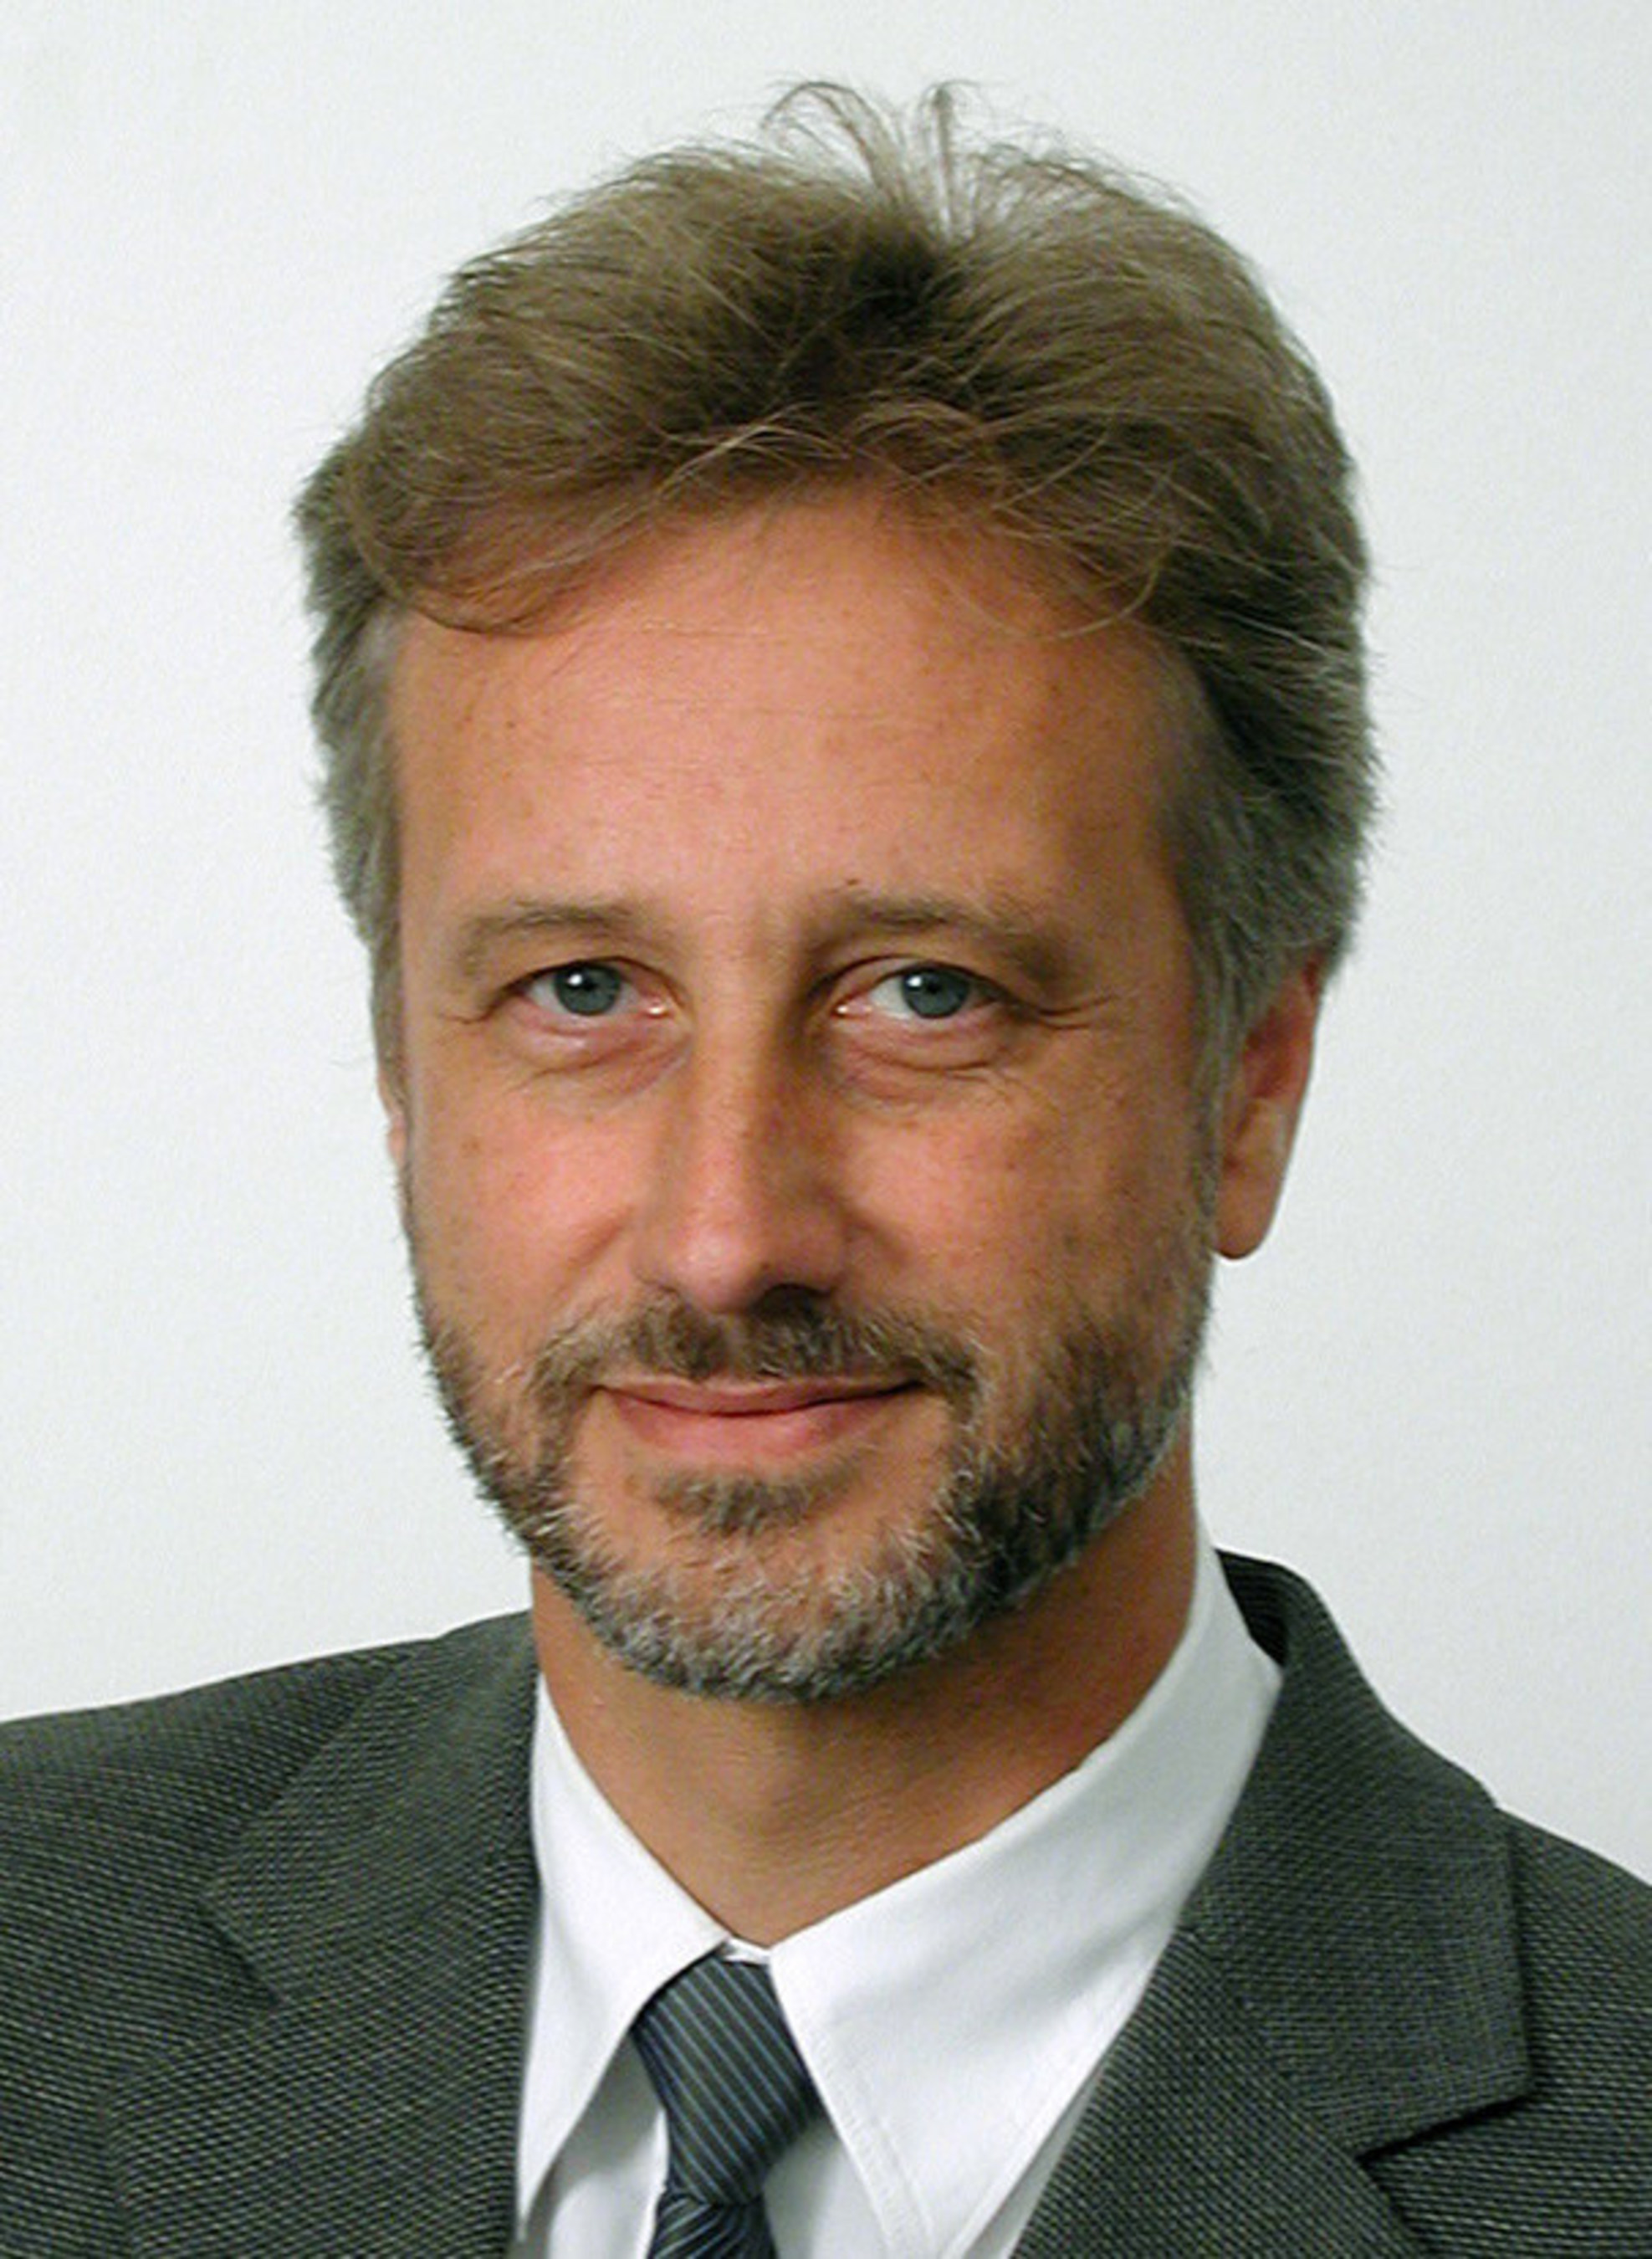 Rolf-Detlef Treede, Prof., Dr. med, IASP President